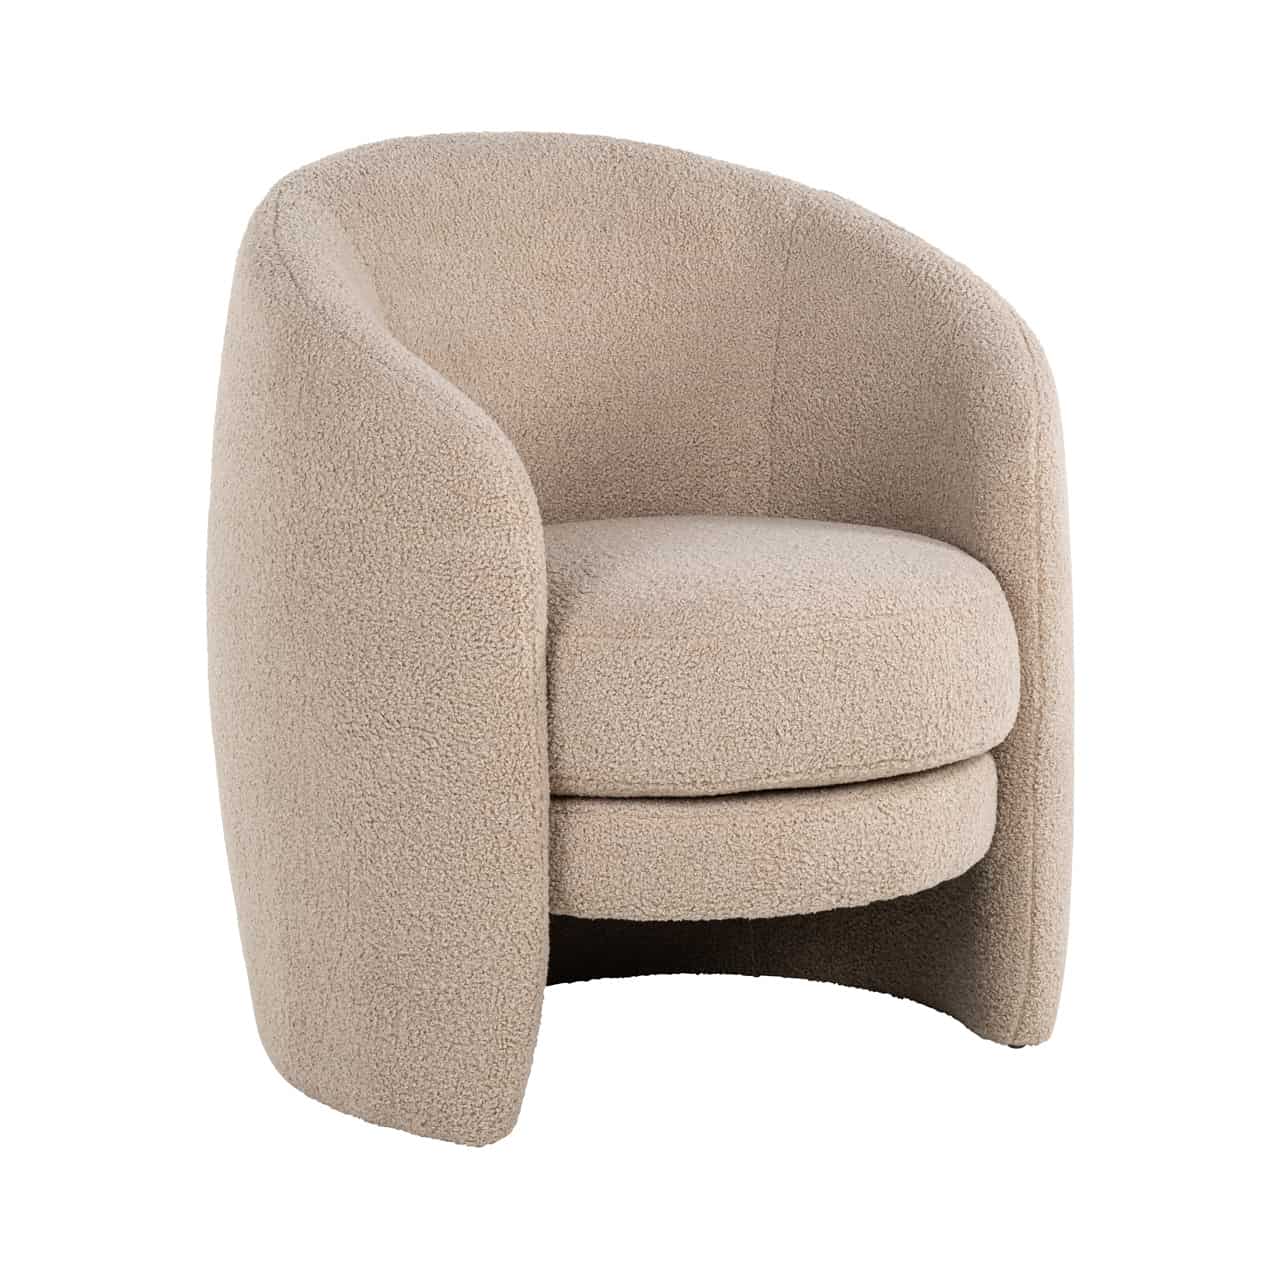 Moderner Sessel mit flauschigem, sandfarbenem Bezug; das runde Sitzpolster ist  von einer halbrunden gepolsterten Schale eingefasst.